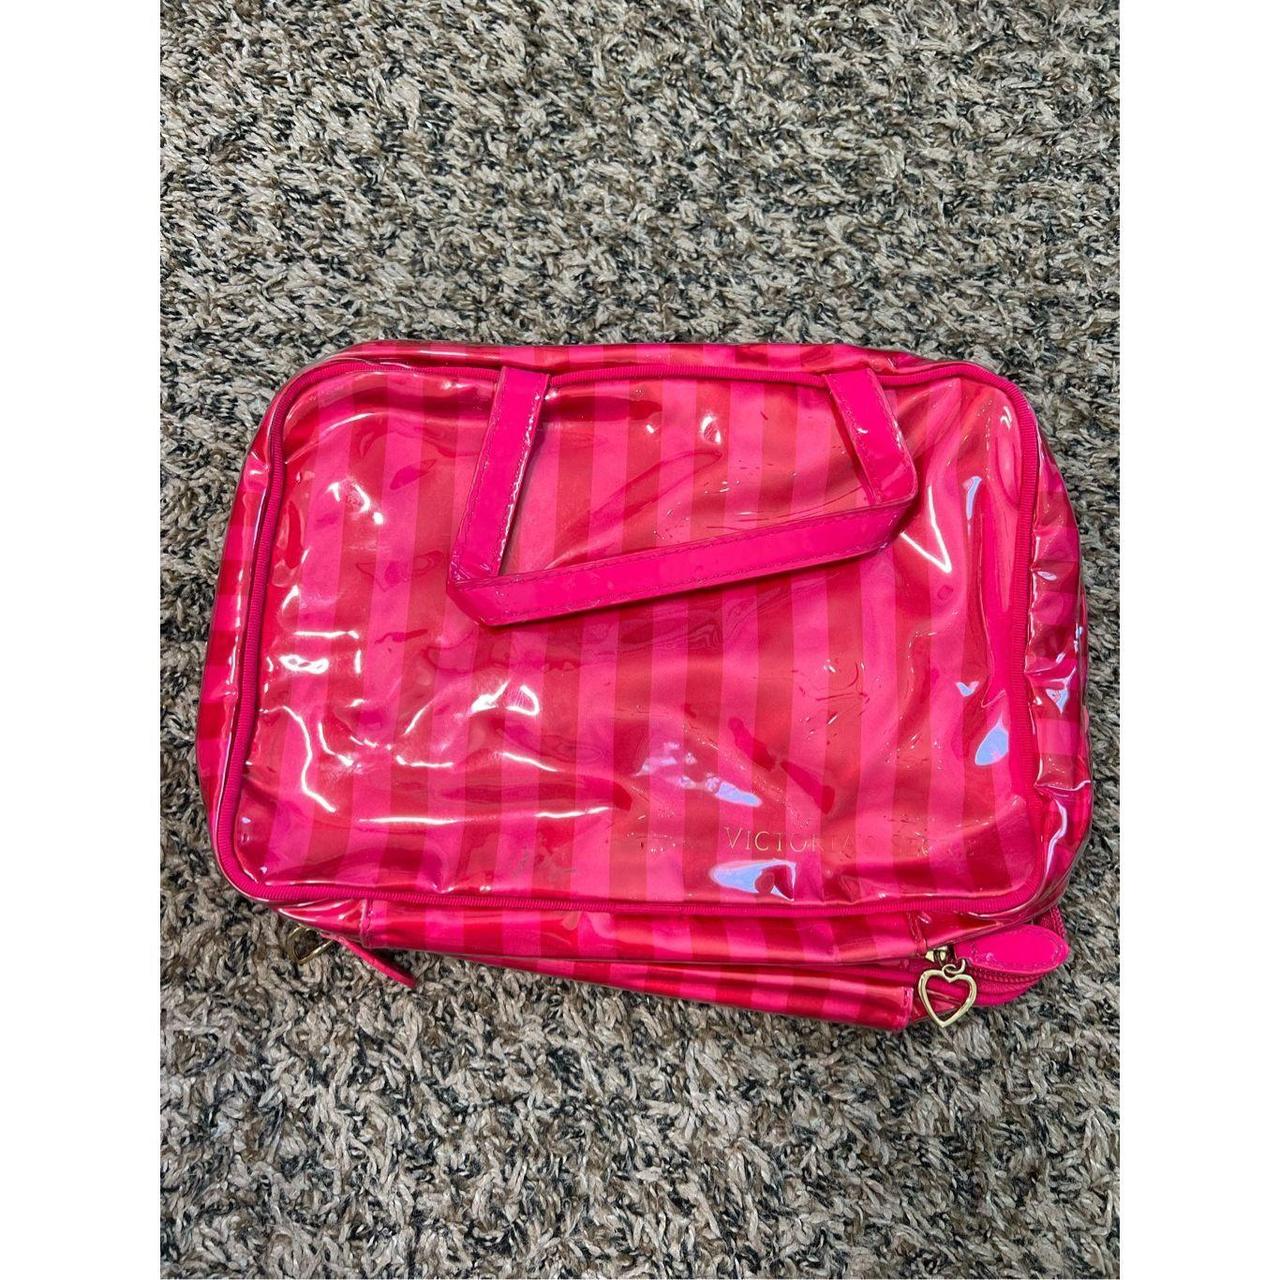 Victoria's Secret travel makeup bag red pink one - Depop